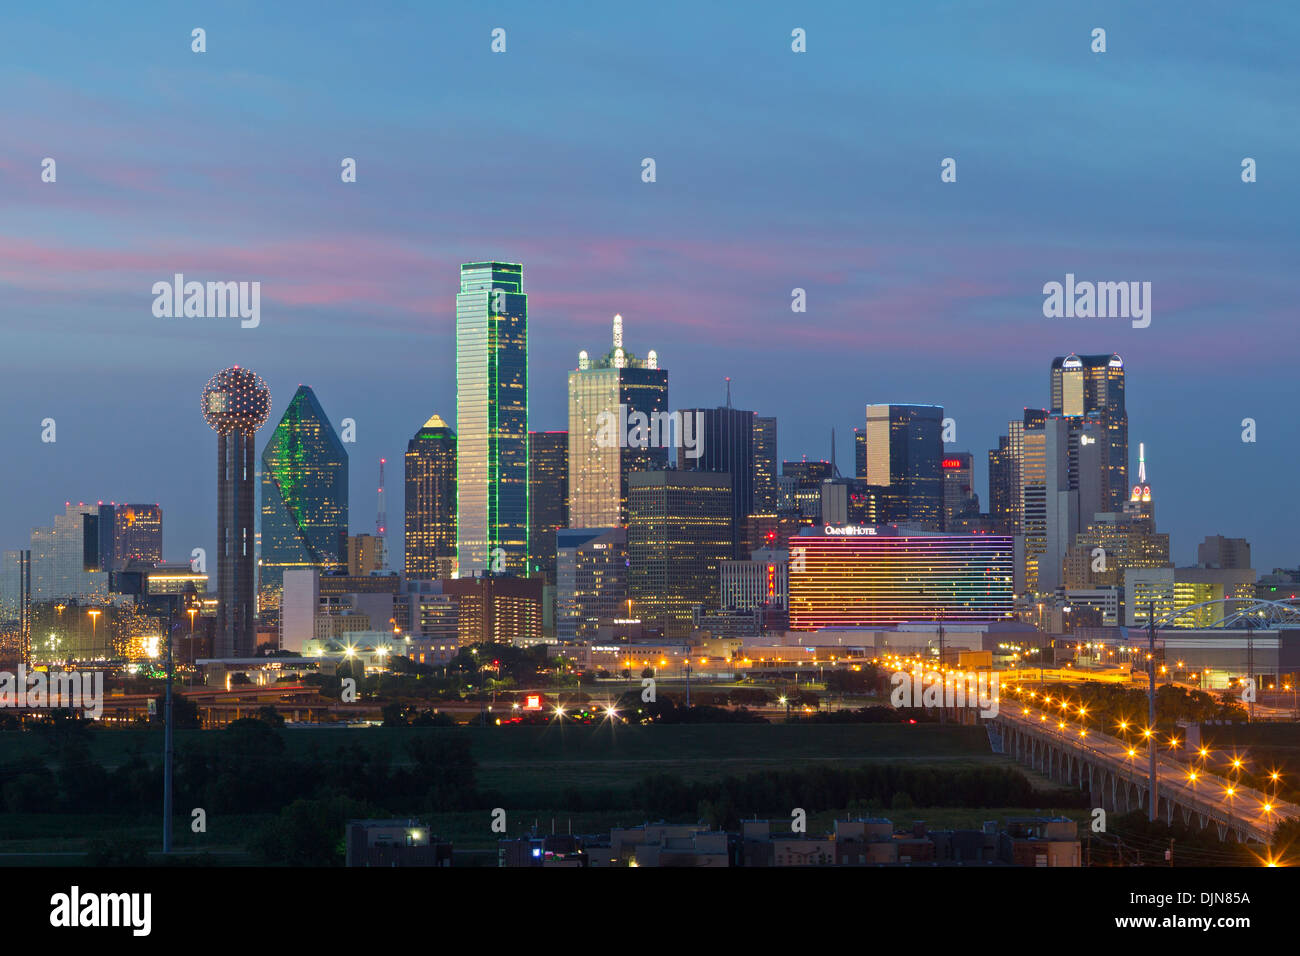 Die Skyline von Dallas beginnt zu leuchten an einem lauen Sommerabend. In der Skyline ist der berühmte Reunion Tower. Stockfoto